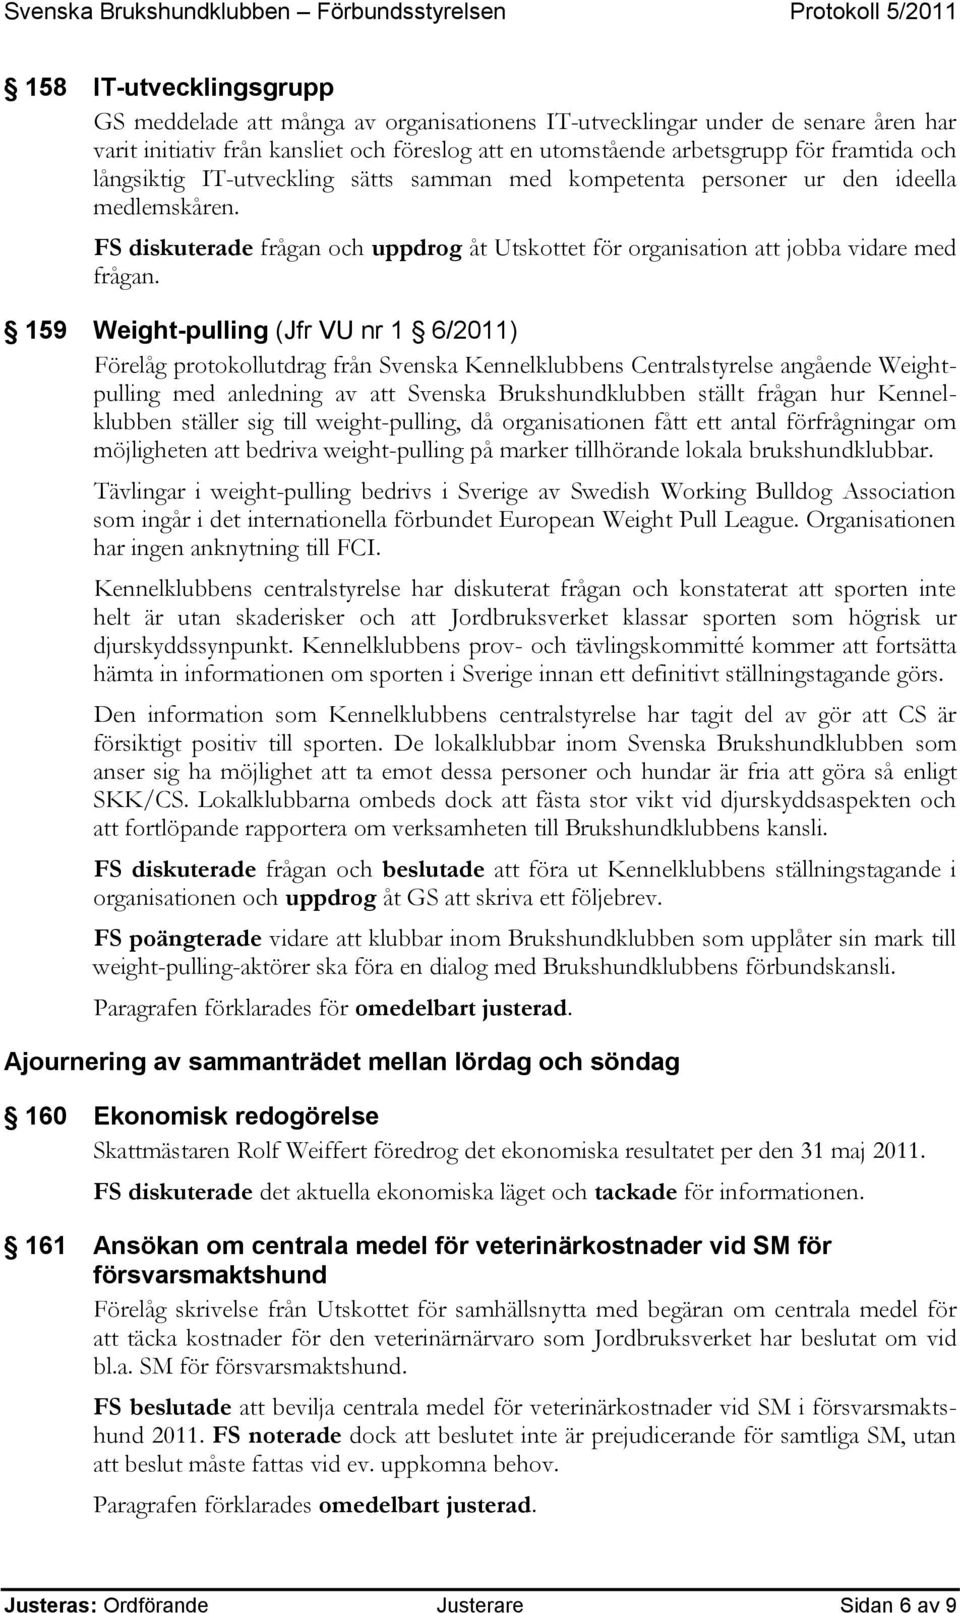 159 Weight-pulling (Jfr VU nr 1 6/2011) Förelåg protokollutdrag från Svenska Kennelklubbens Centralstyrelse angående Weightpulling med anledning av att Svenska Brukshundklubben ställt frågan hur